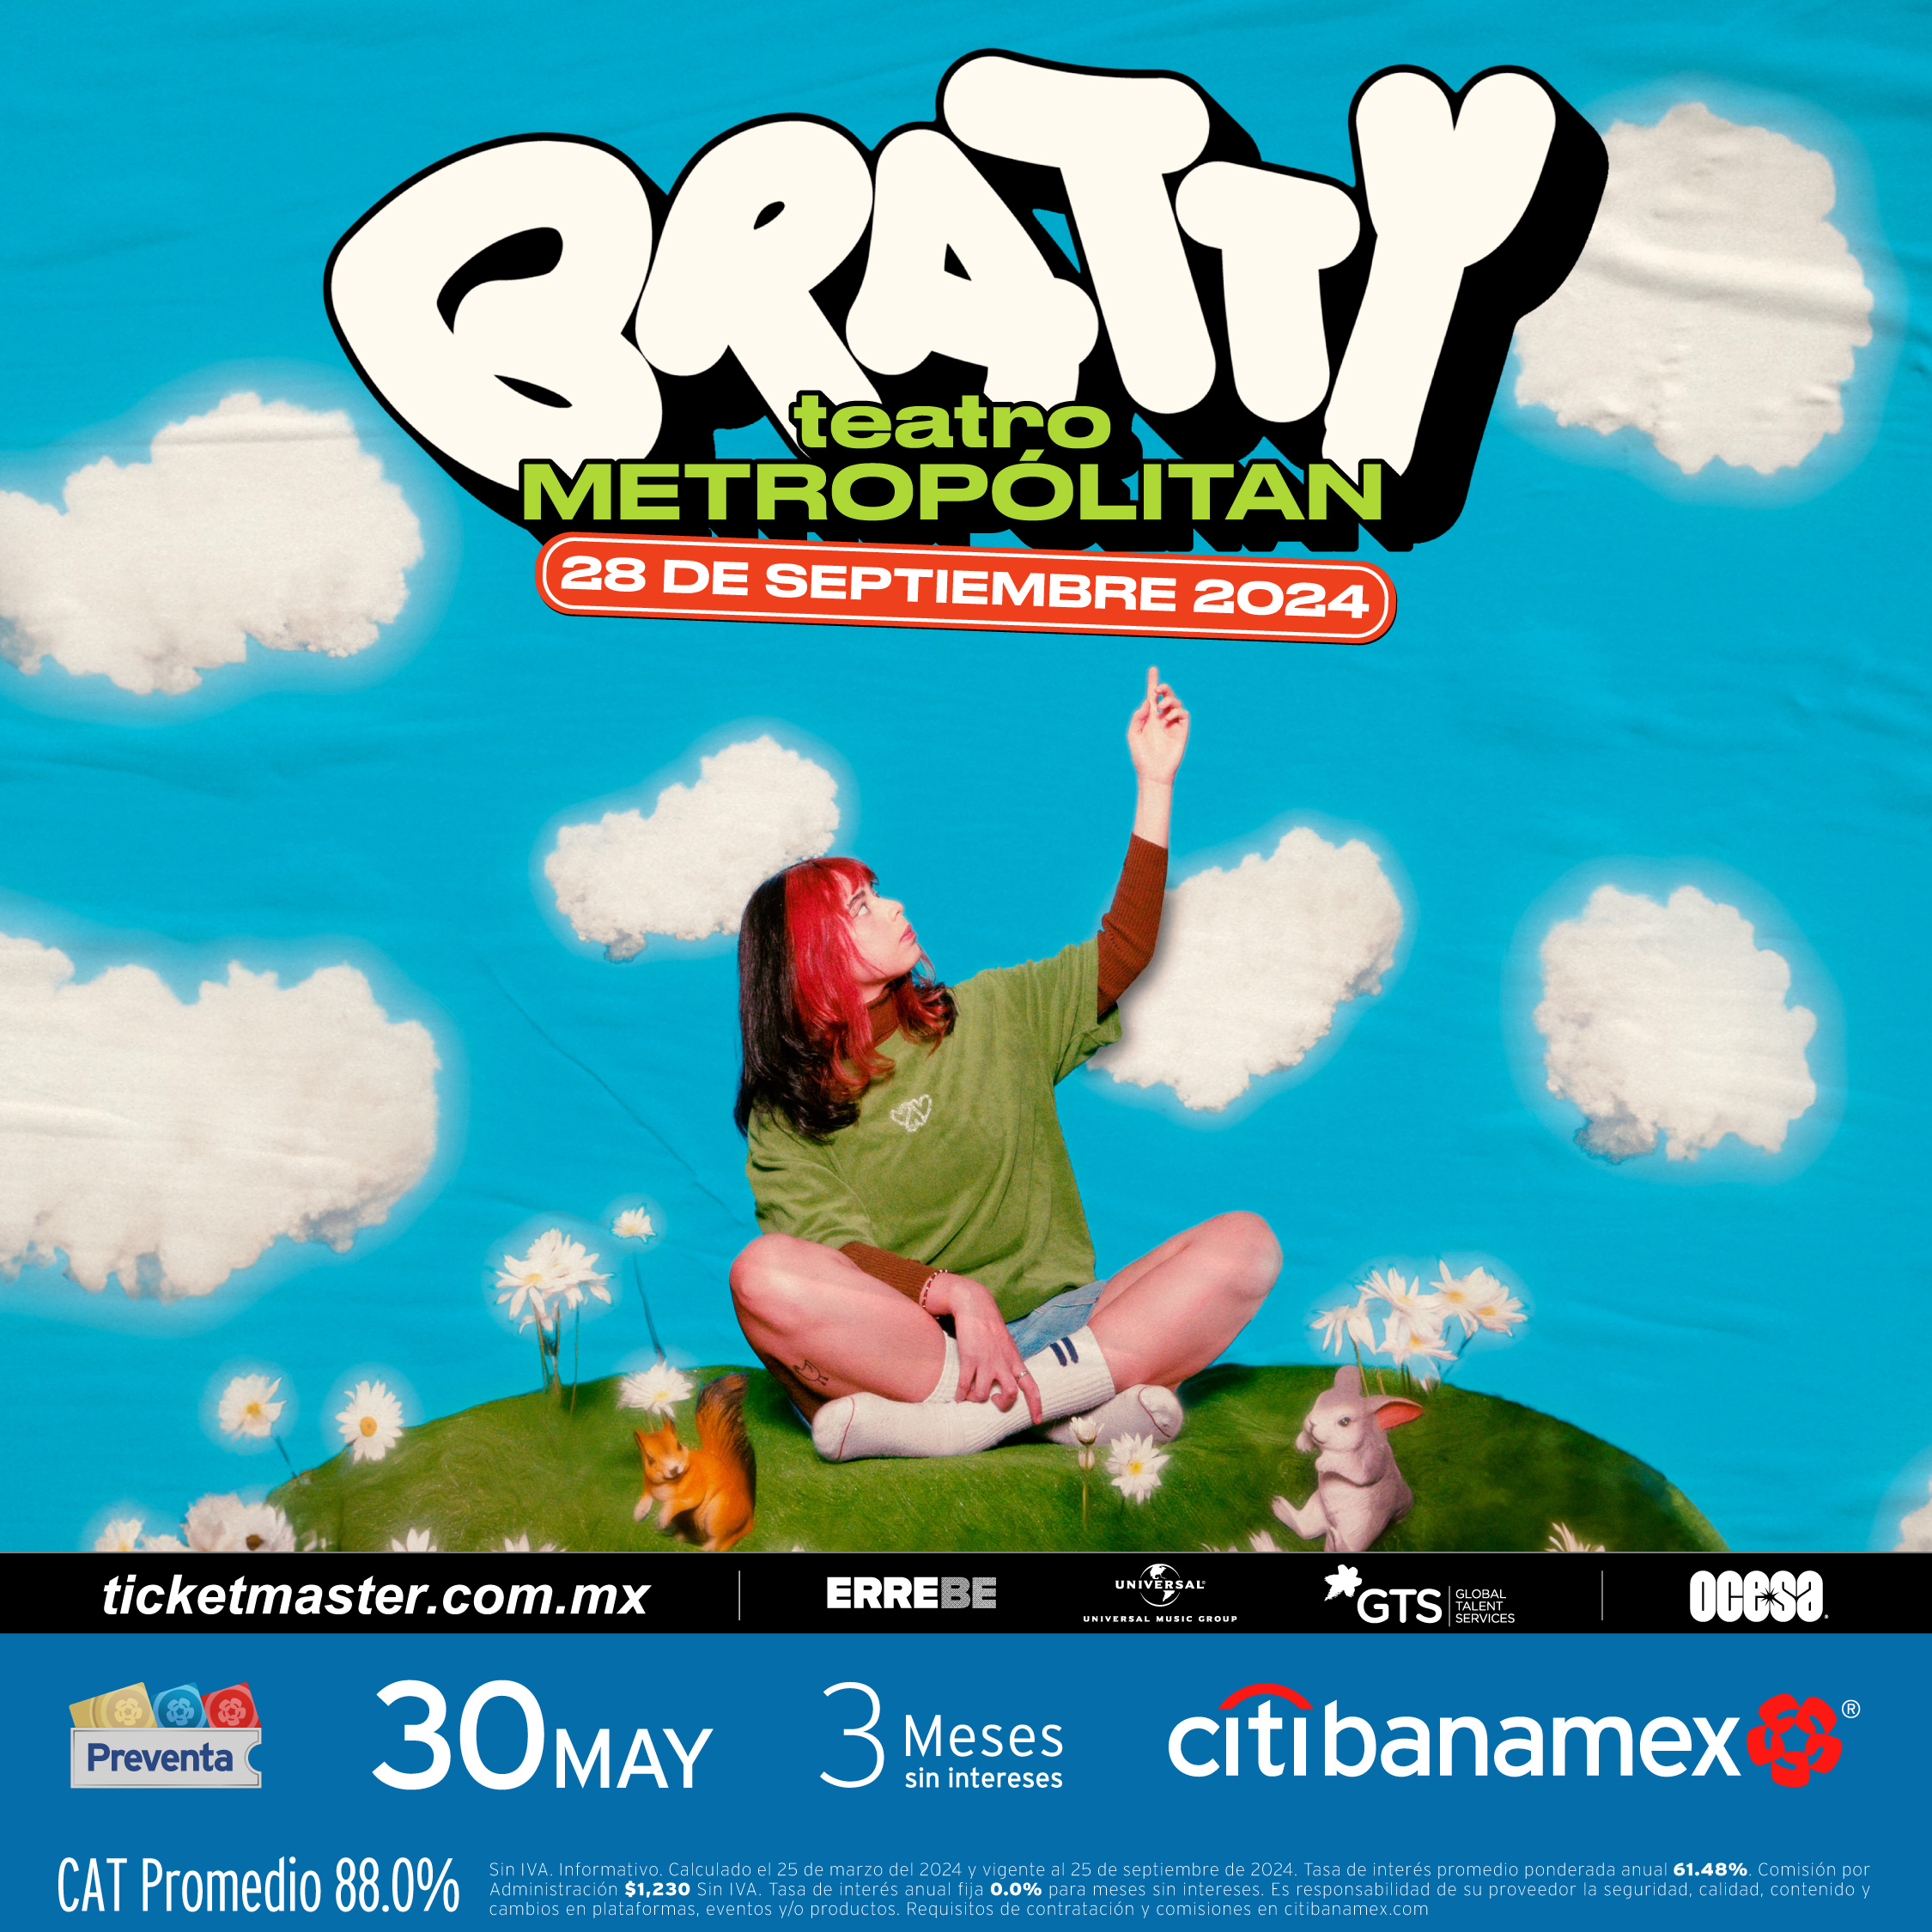 Bratty anuncia 2 shows imperdibles en México 1